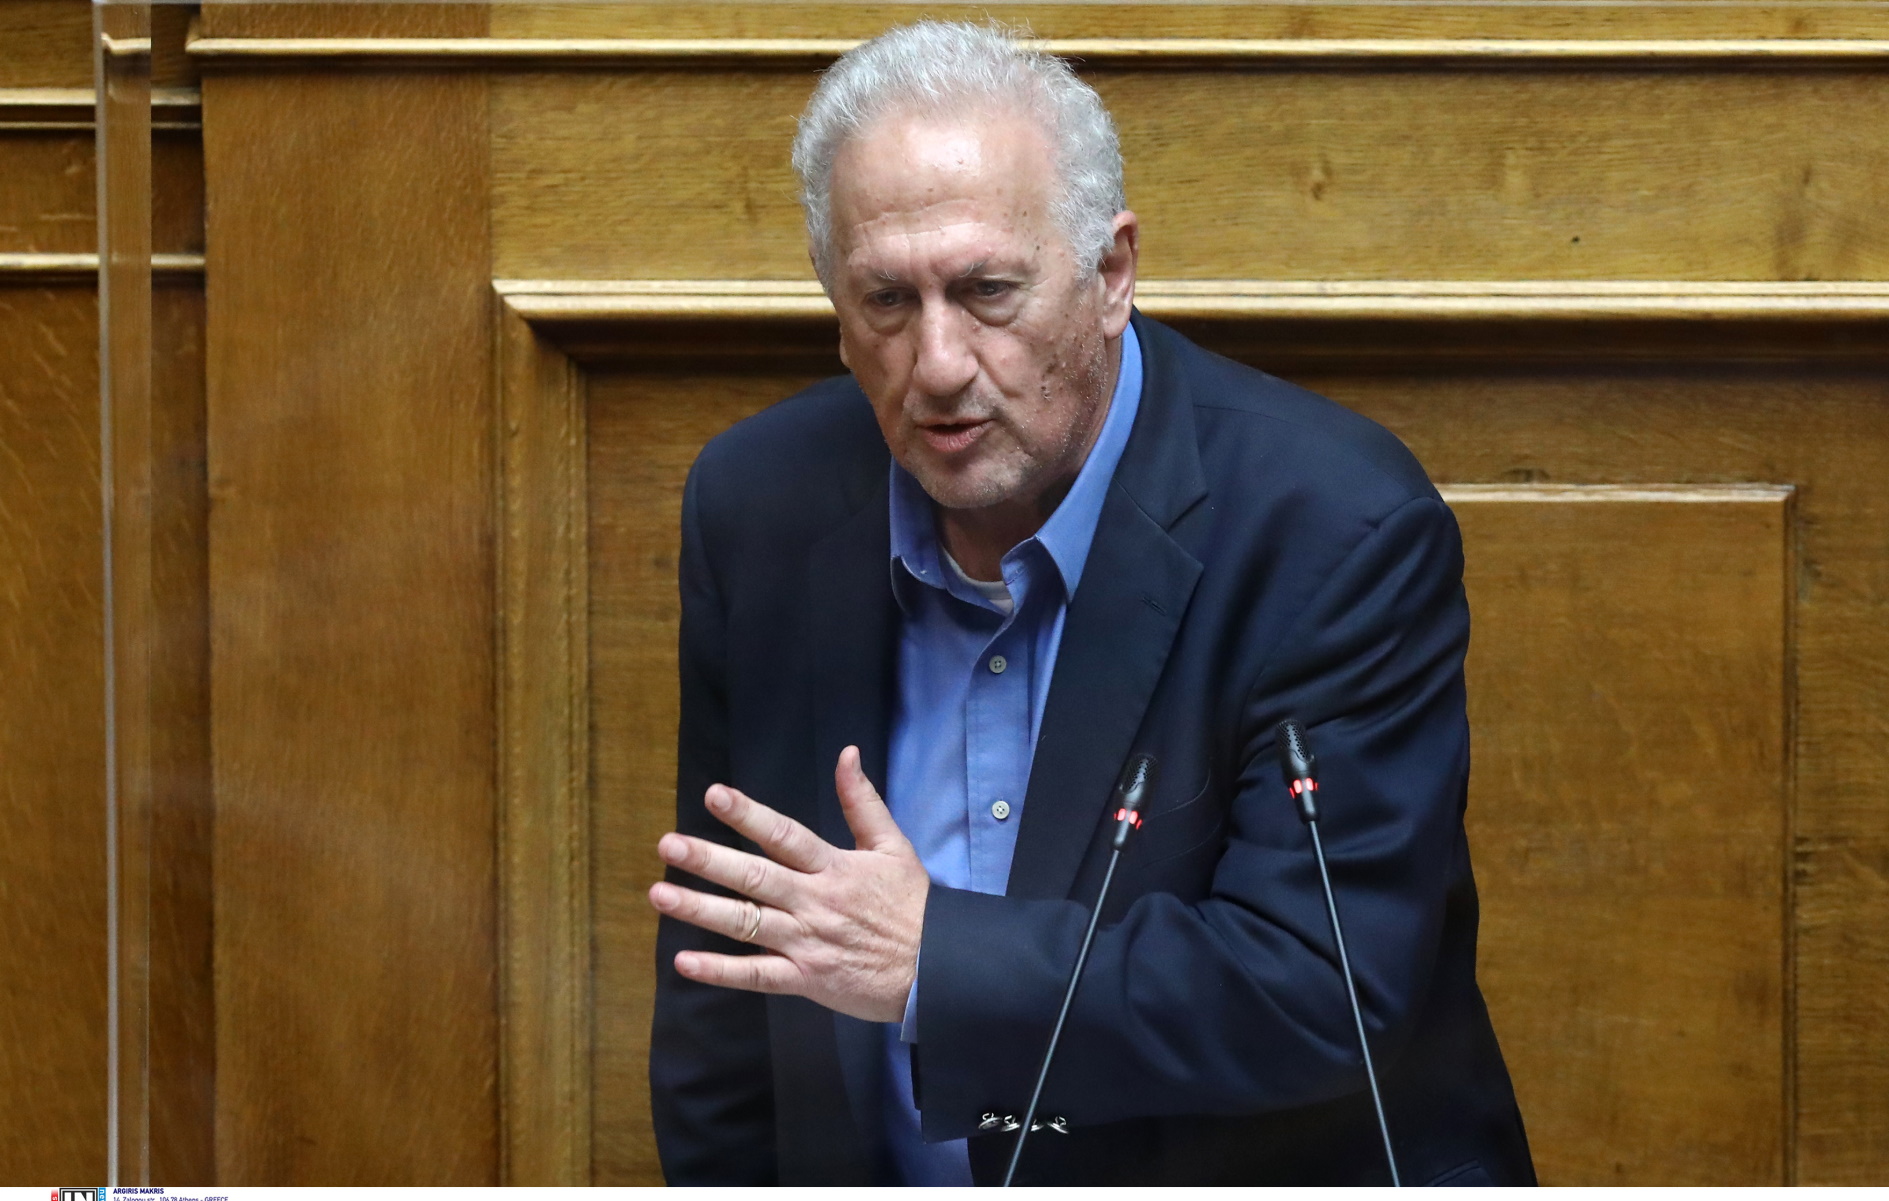 Σκανδαλίδης: Ο Ανδρέας παρέλαβε μία Ελλάδα ξυπόλυτη στα αγκάθια και την έφερε στο κέντρο των εξελίξεων